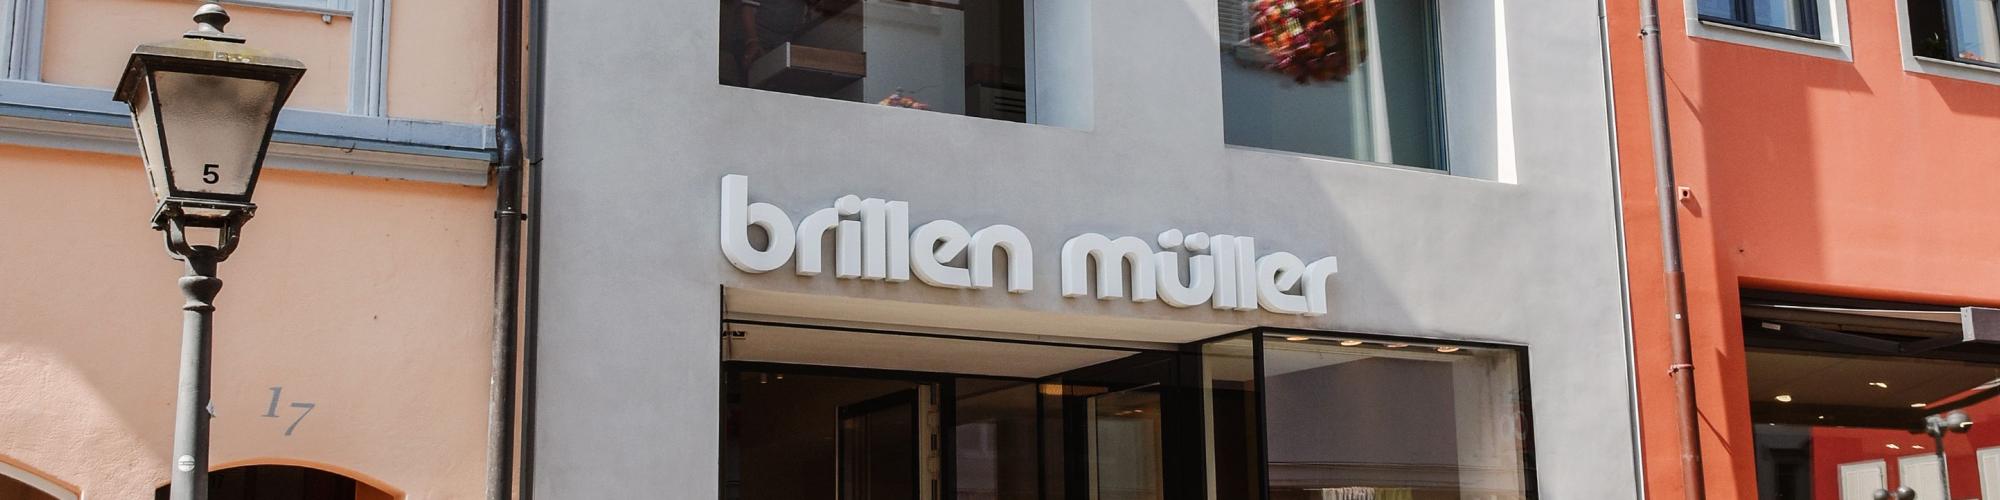 Brillen Müller GmbH & Co. OHG